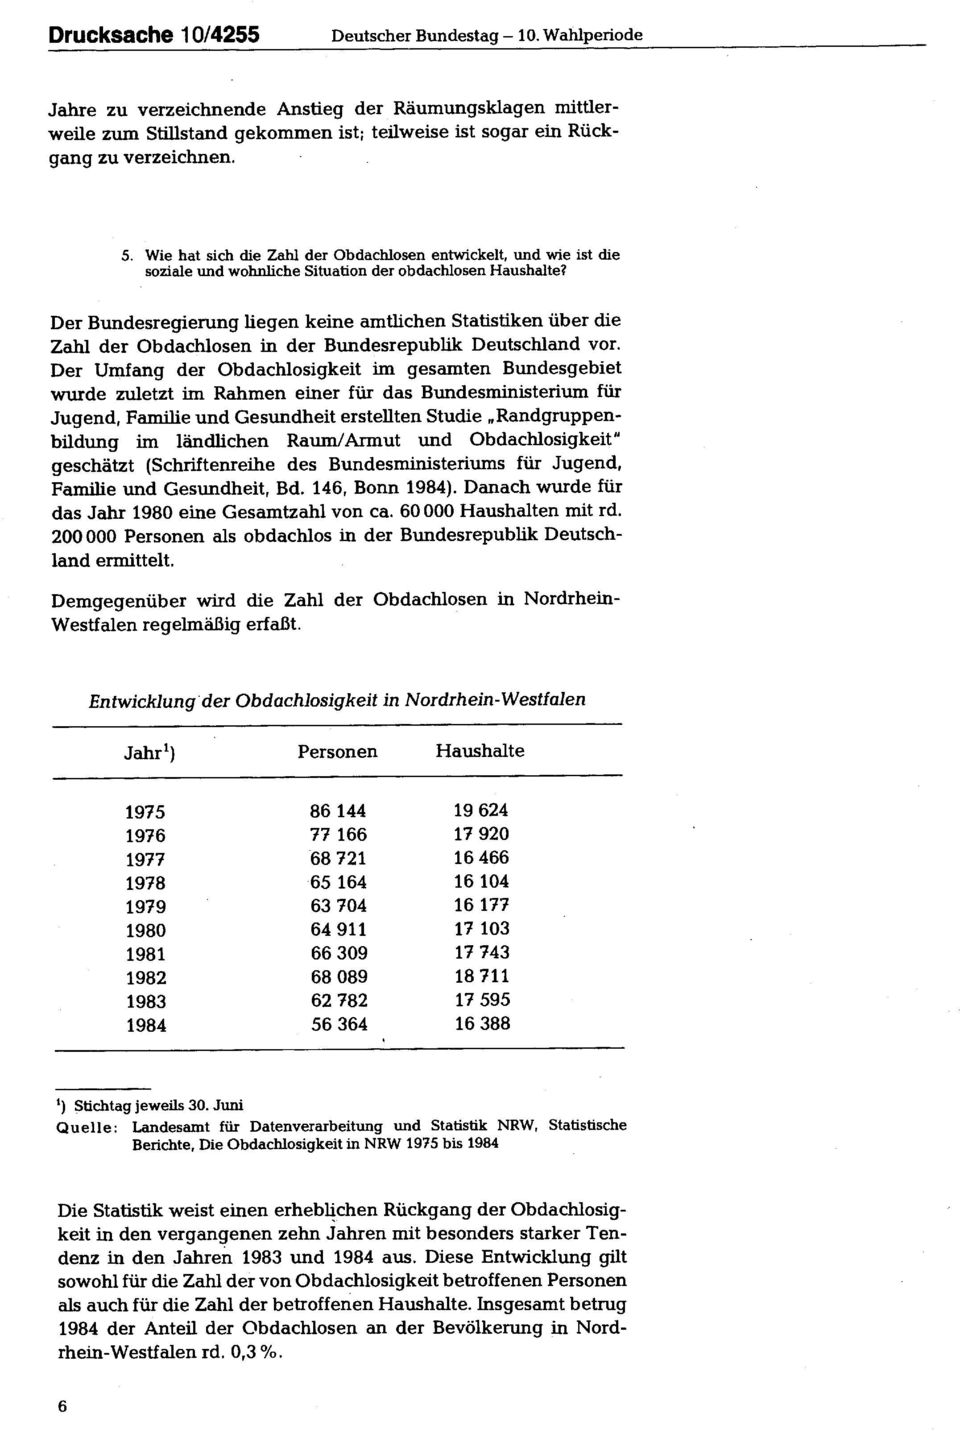 Der Bundesregierung liegen keine amtlichen Statistiken über die Zahl der Obdachlosen in der Bundesrepublik Deutschland vor.